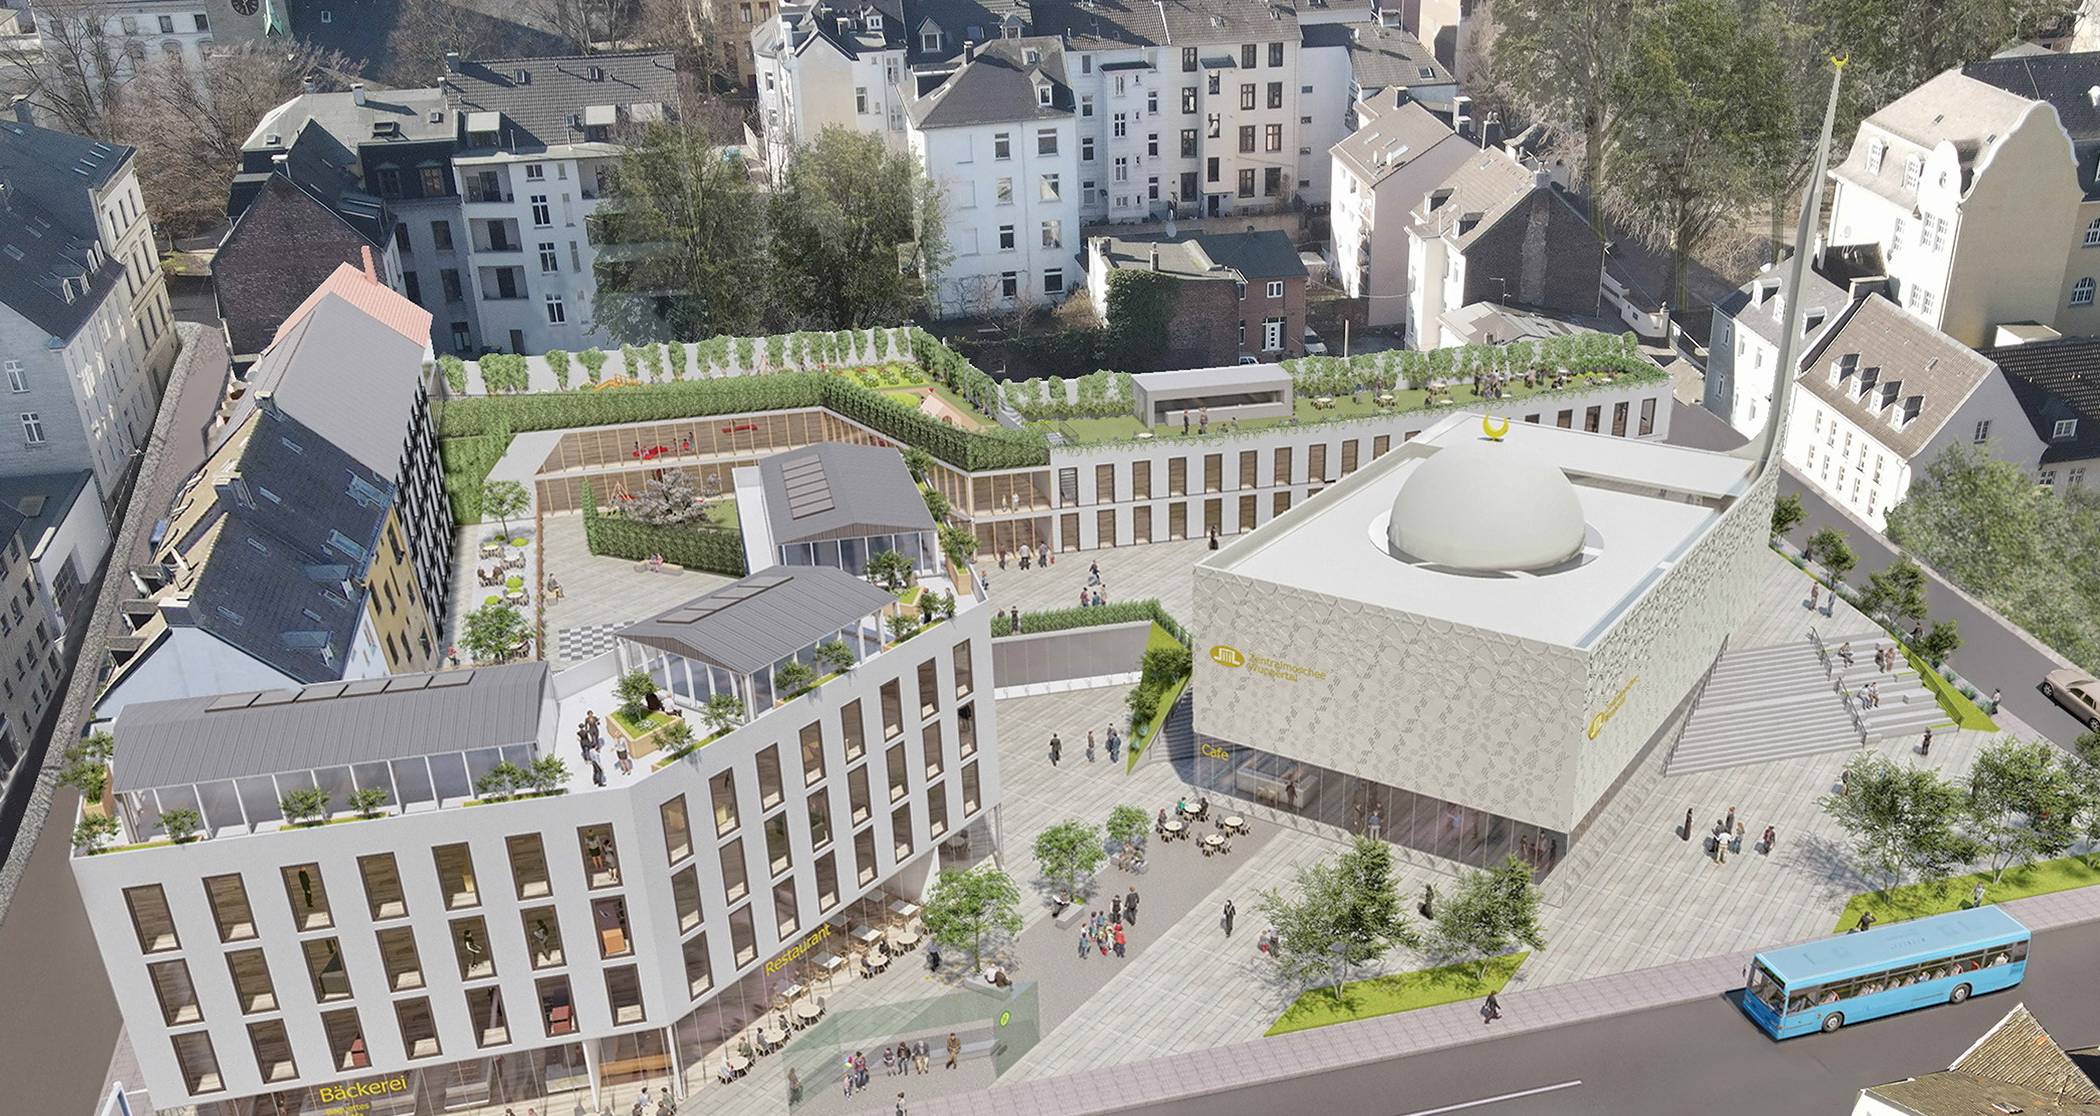  Die Visualisierung des an der Gathe geplanten Moschee-Areals der Ditb-Gemeinde Wuppertal. 